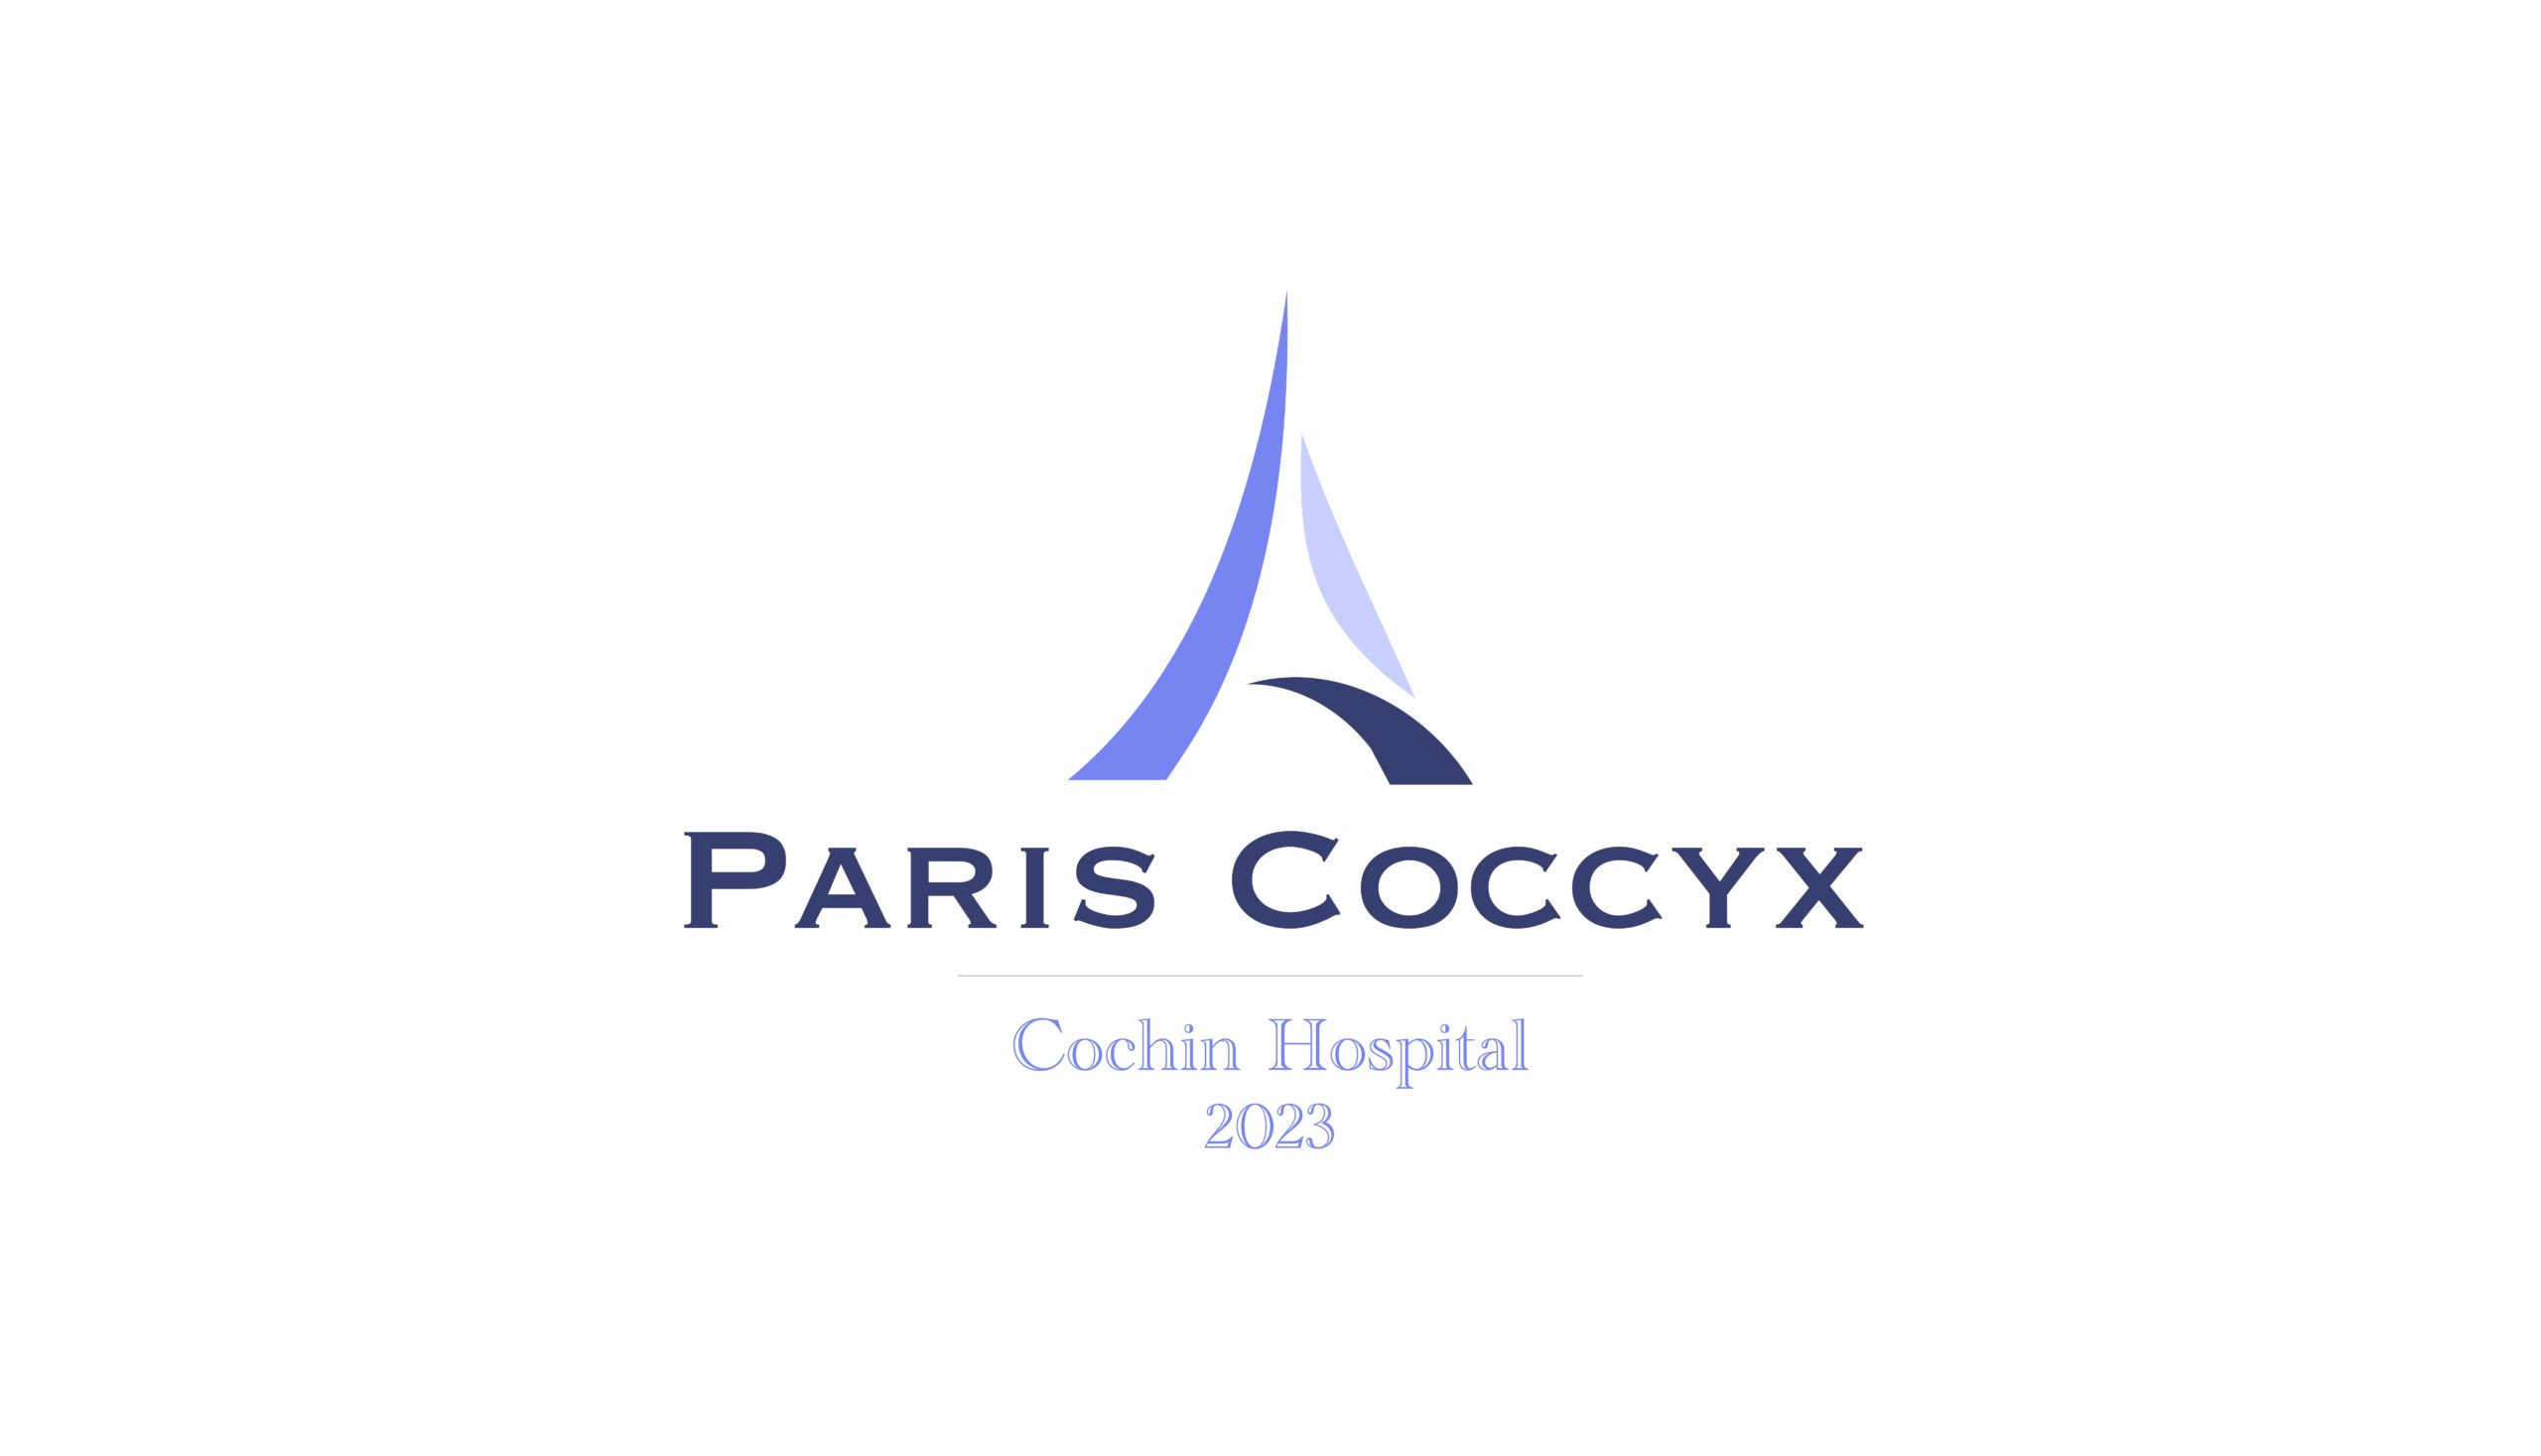 Paris Coccyx 2023